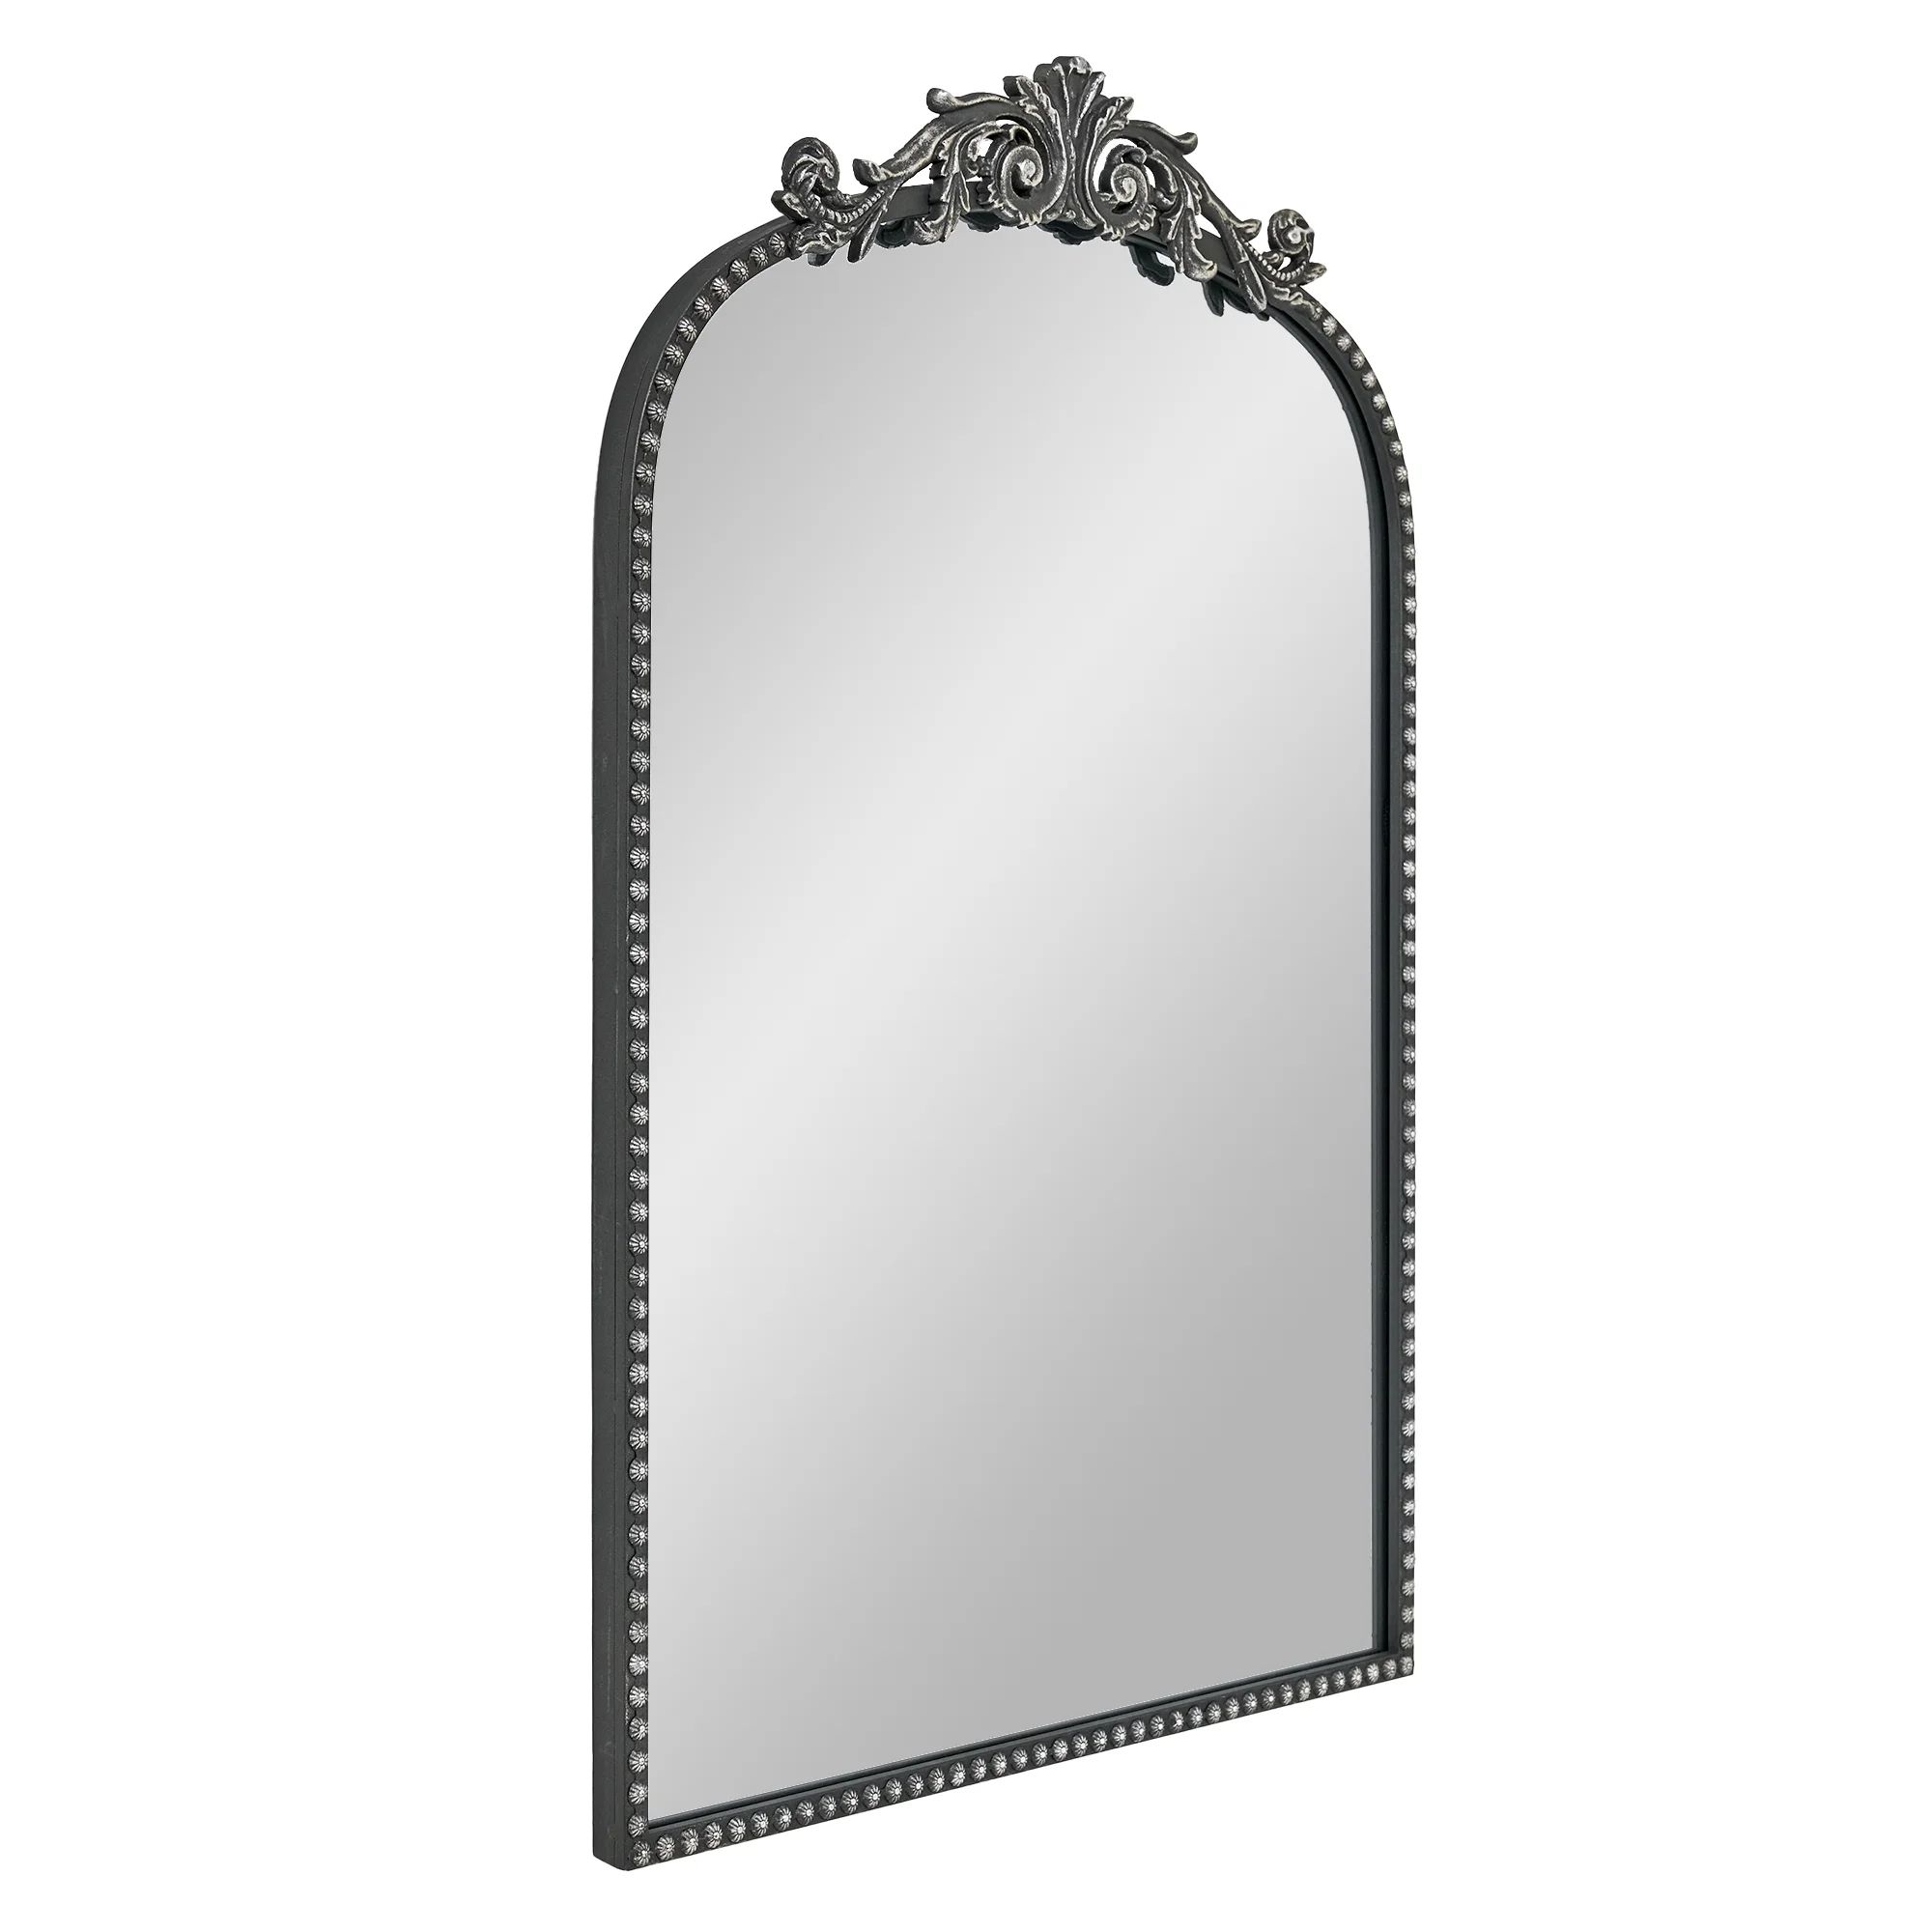 20” X 30” Filigree Arch Metal Wall Mirror Decor In Black | Walmart (US)